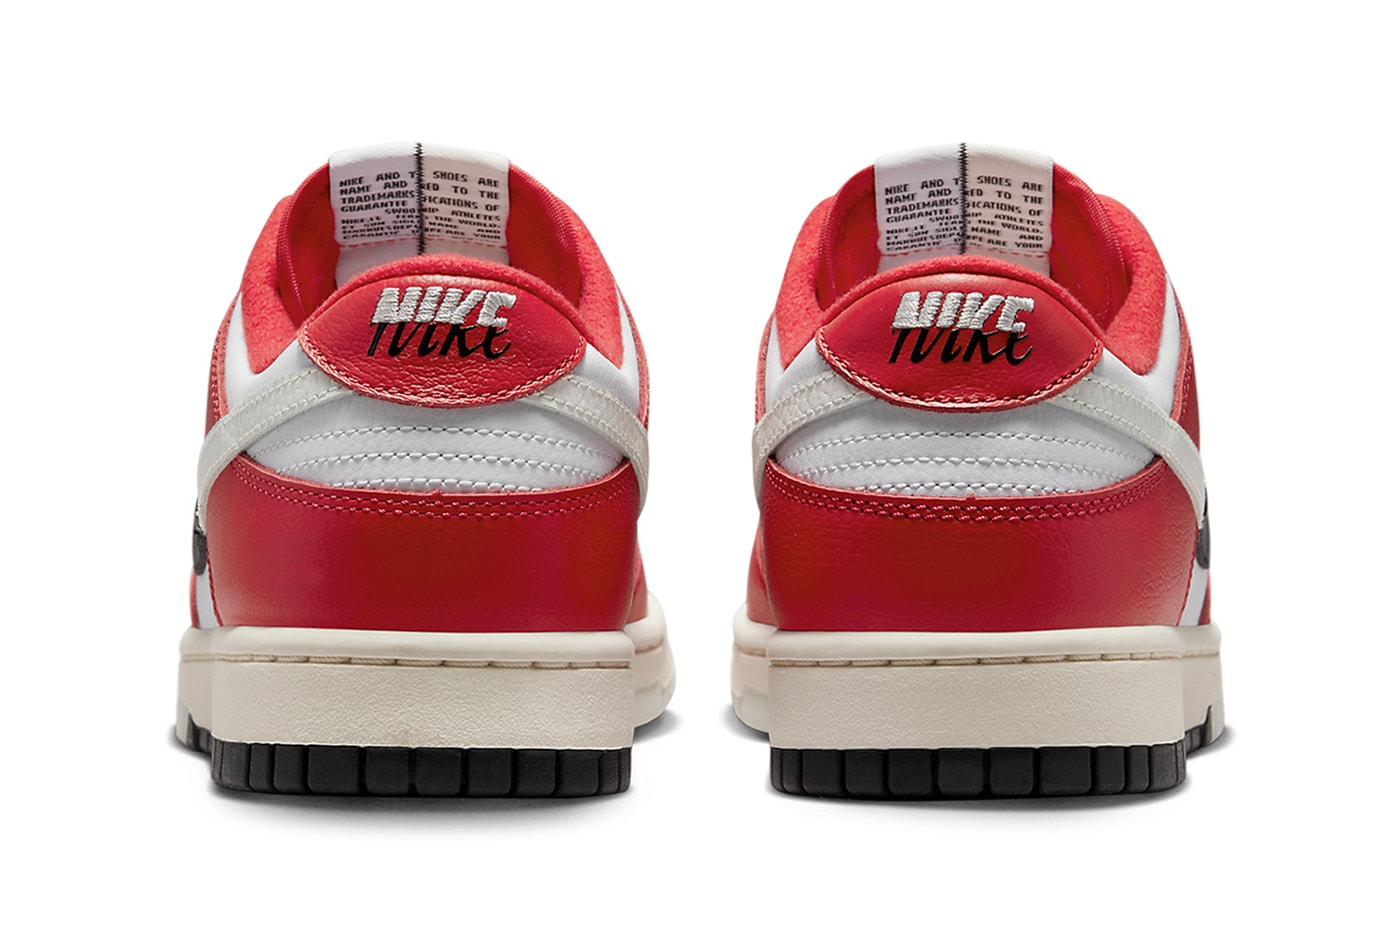 ナイキ ダンク ロー “シカゴ スピット” の公式ビジュアルをチェック Nike Dunk Low Chicago Split DZ2536-600 On-Foot Photos release info